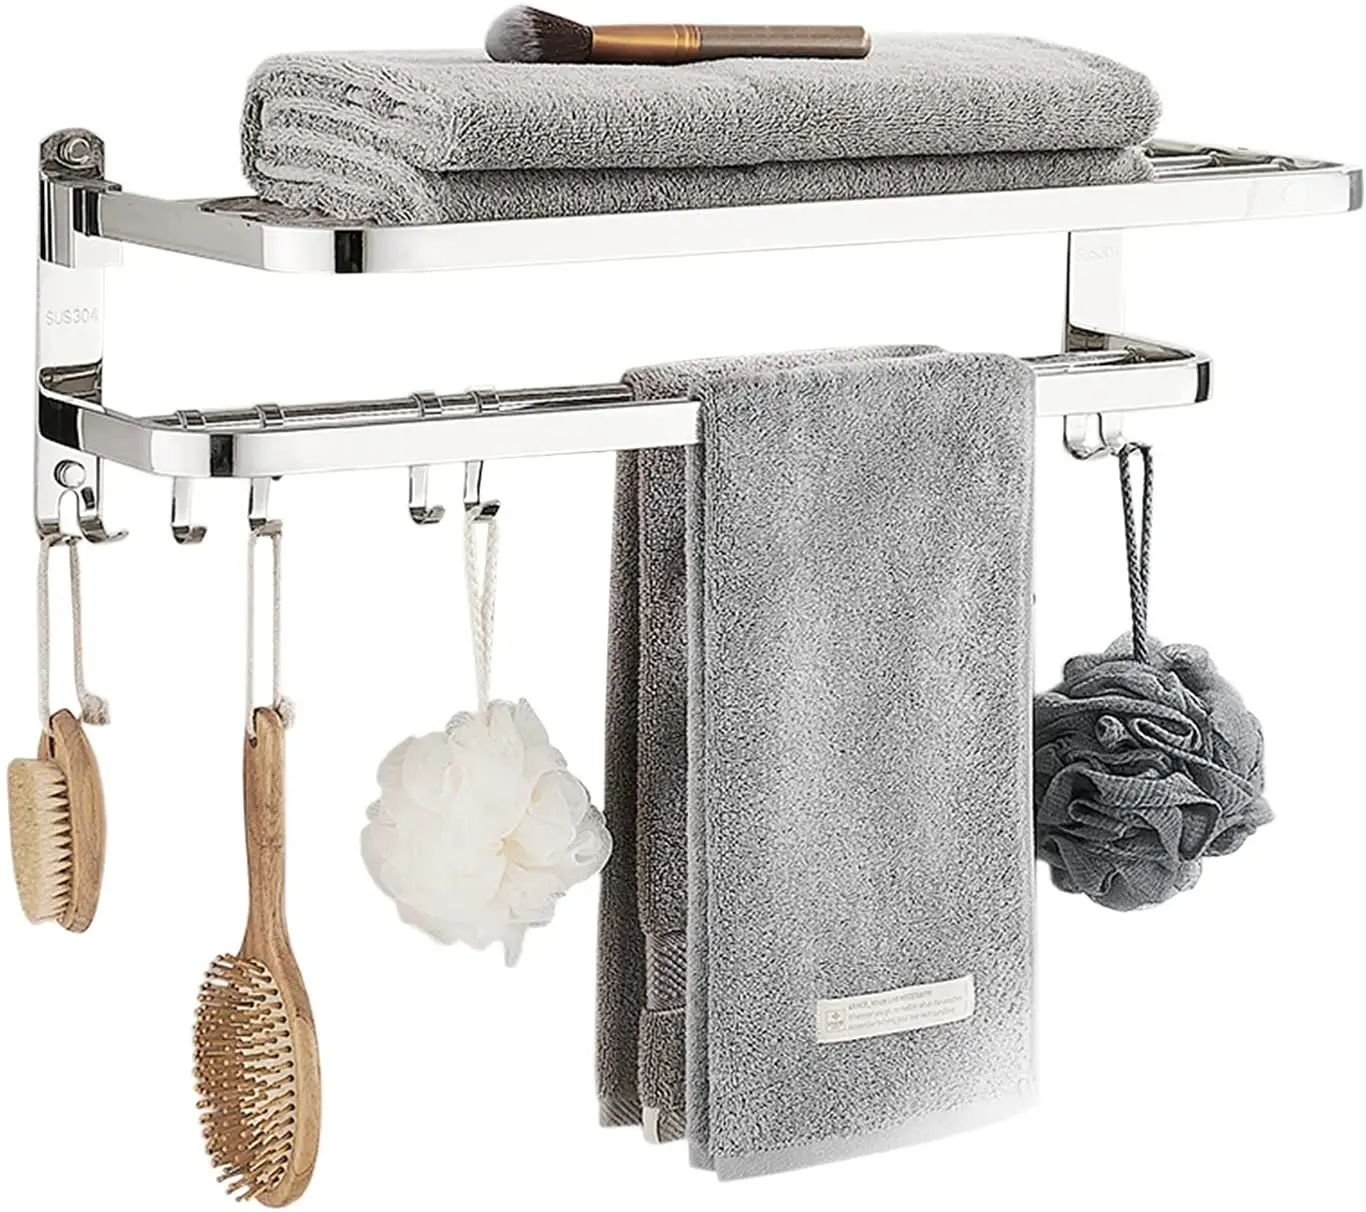 bathroom sus304 stainless steel corner bath towel racks with hook wall mounted folding adhesive towel rack